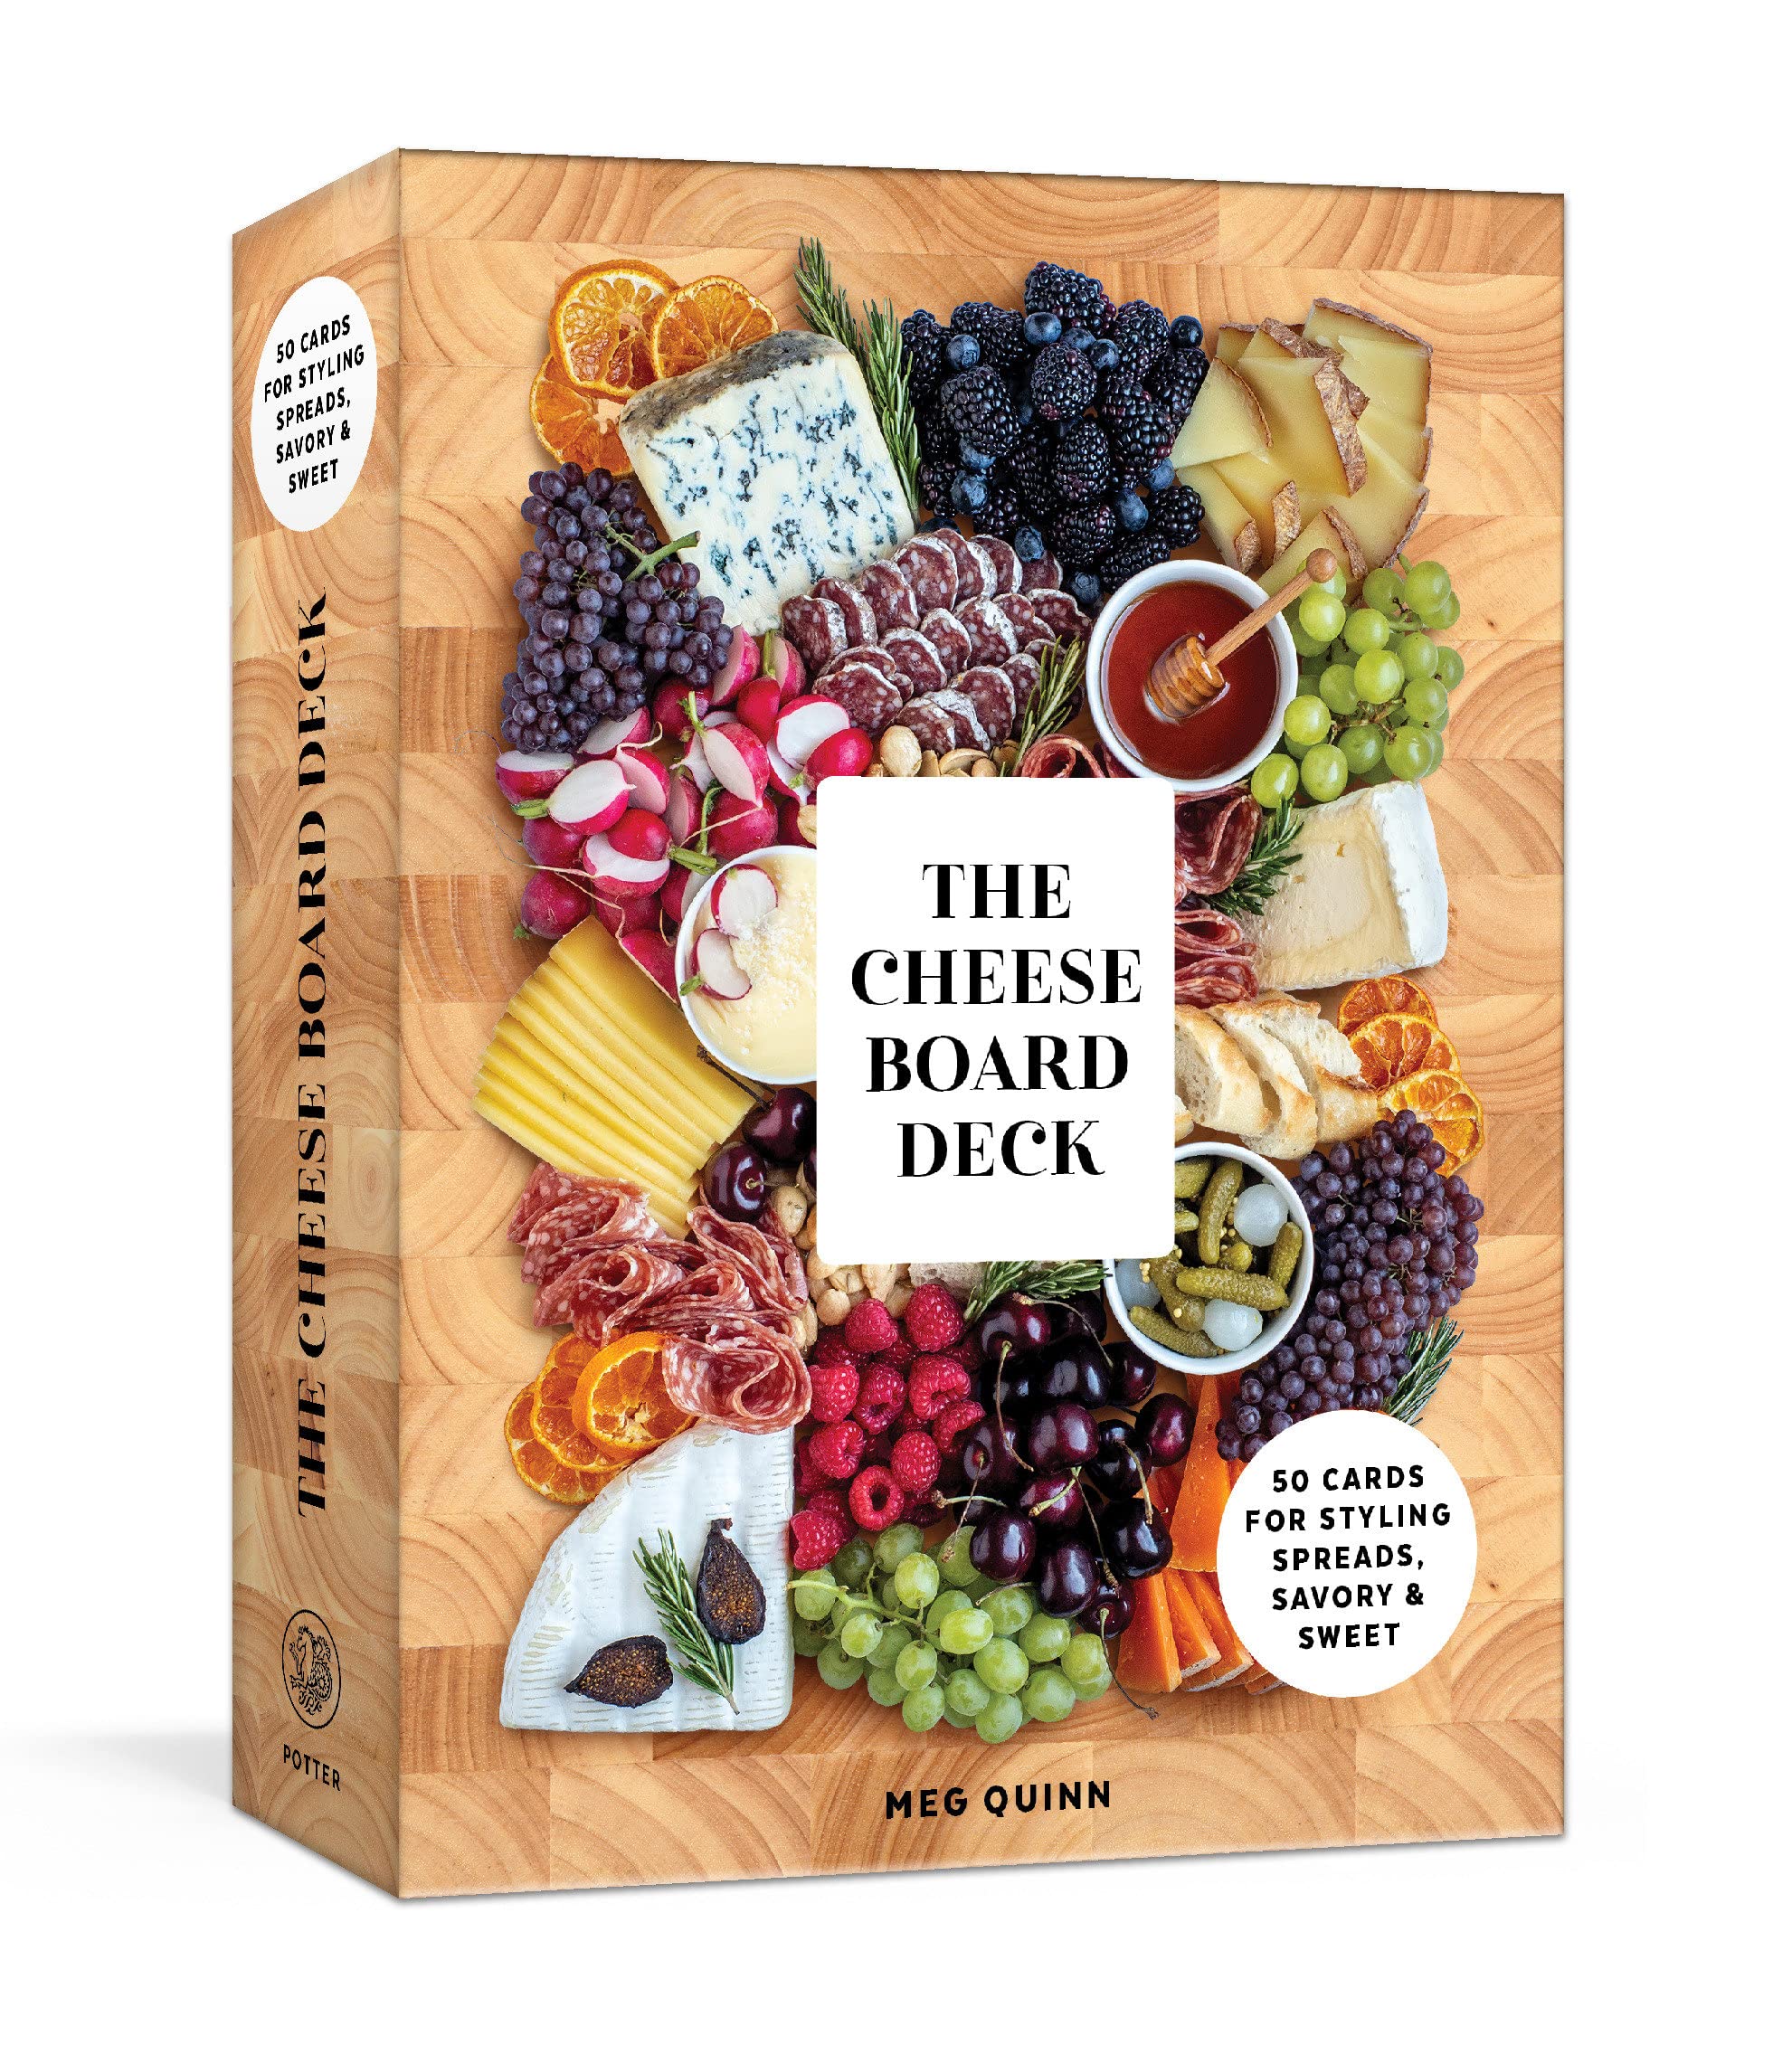 View The Cheese Board Deck by Meg Quinn & Shana Smith